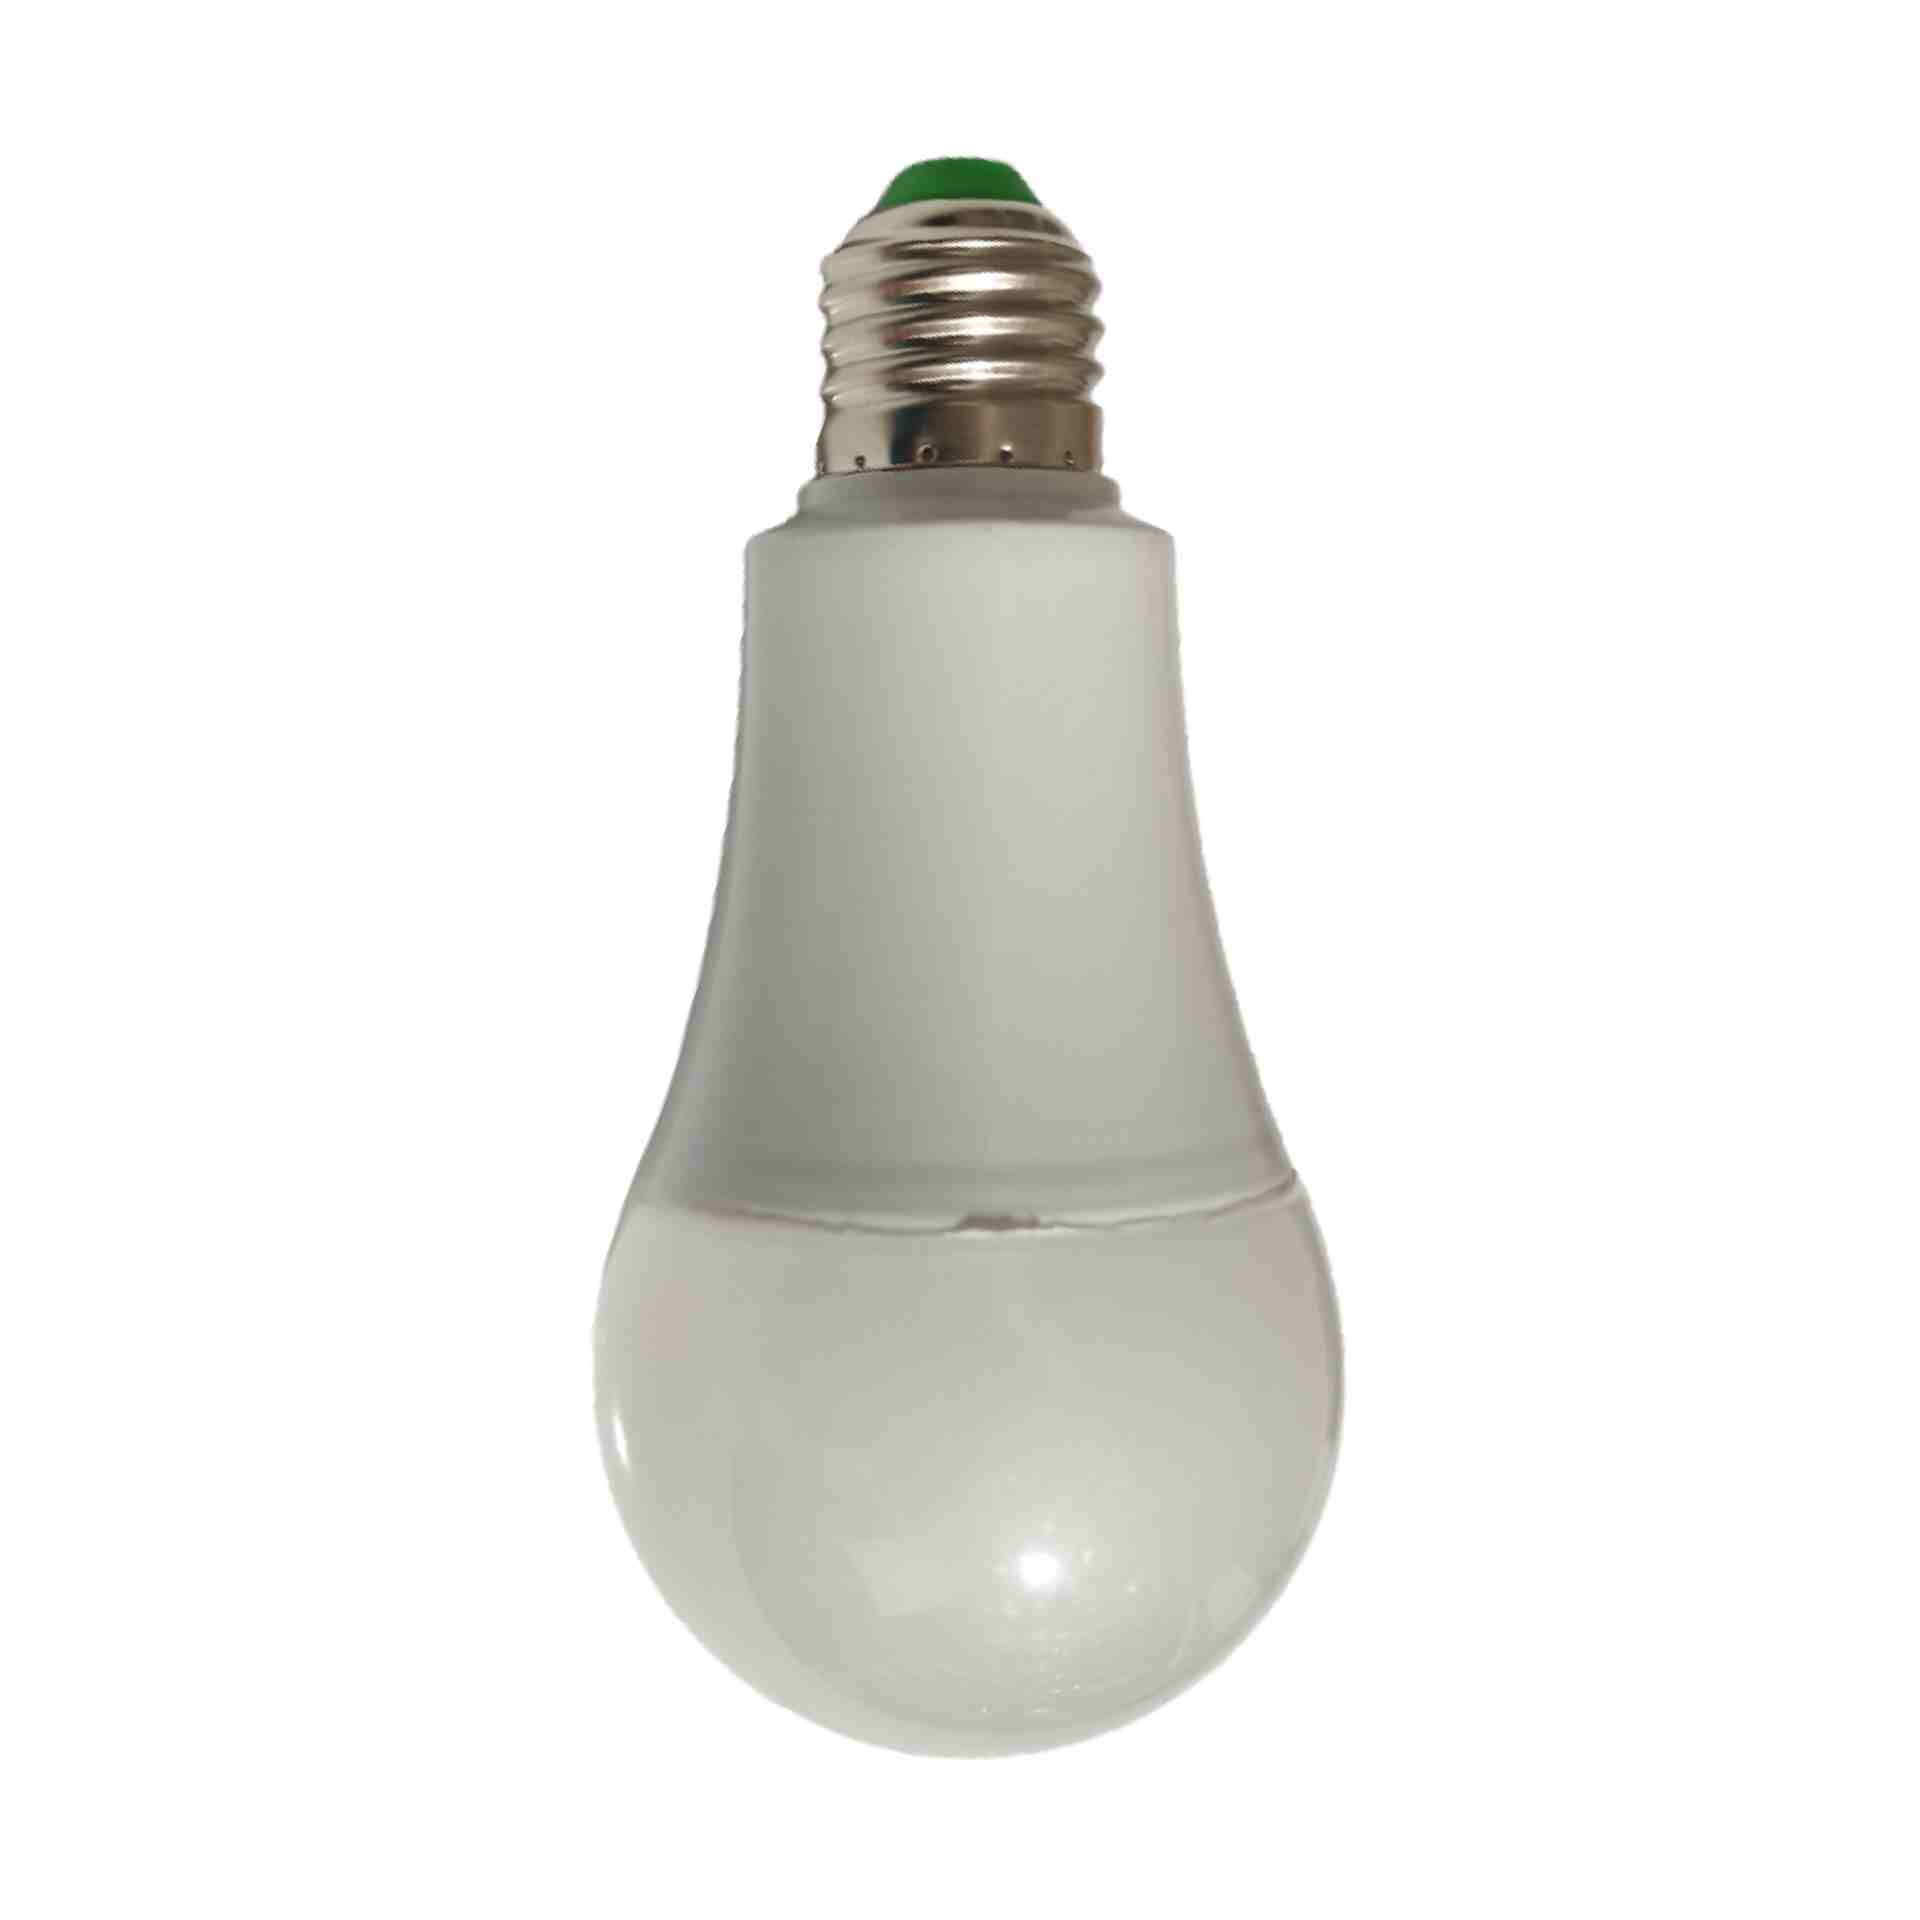 خرید لامپ رشد گیاه ارزان + 11 مدل خانگی و با قیمت مناسب